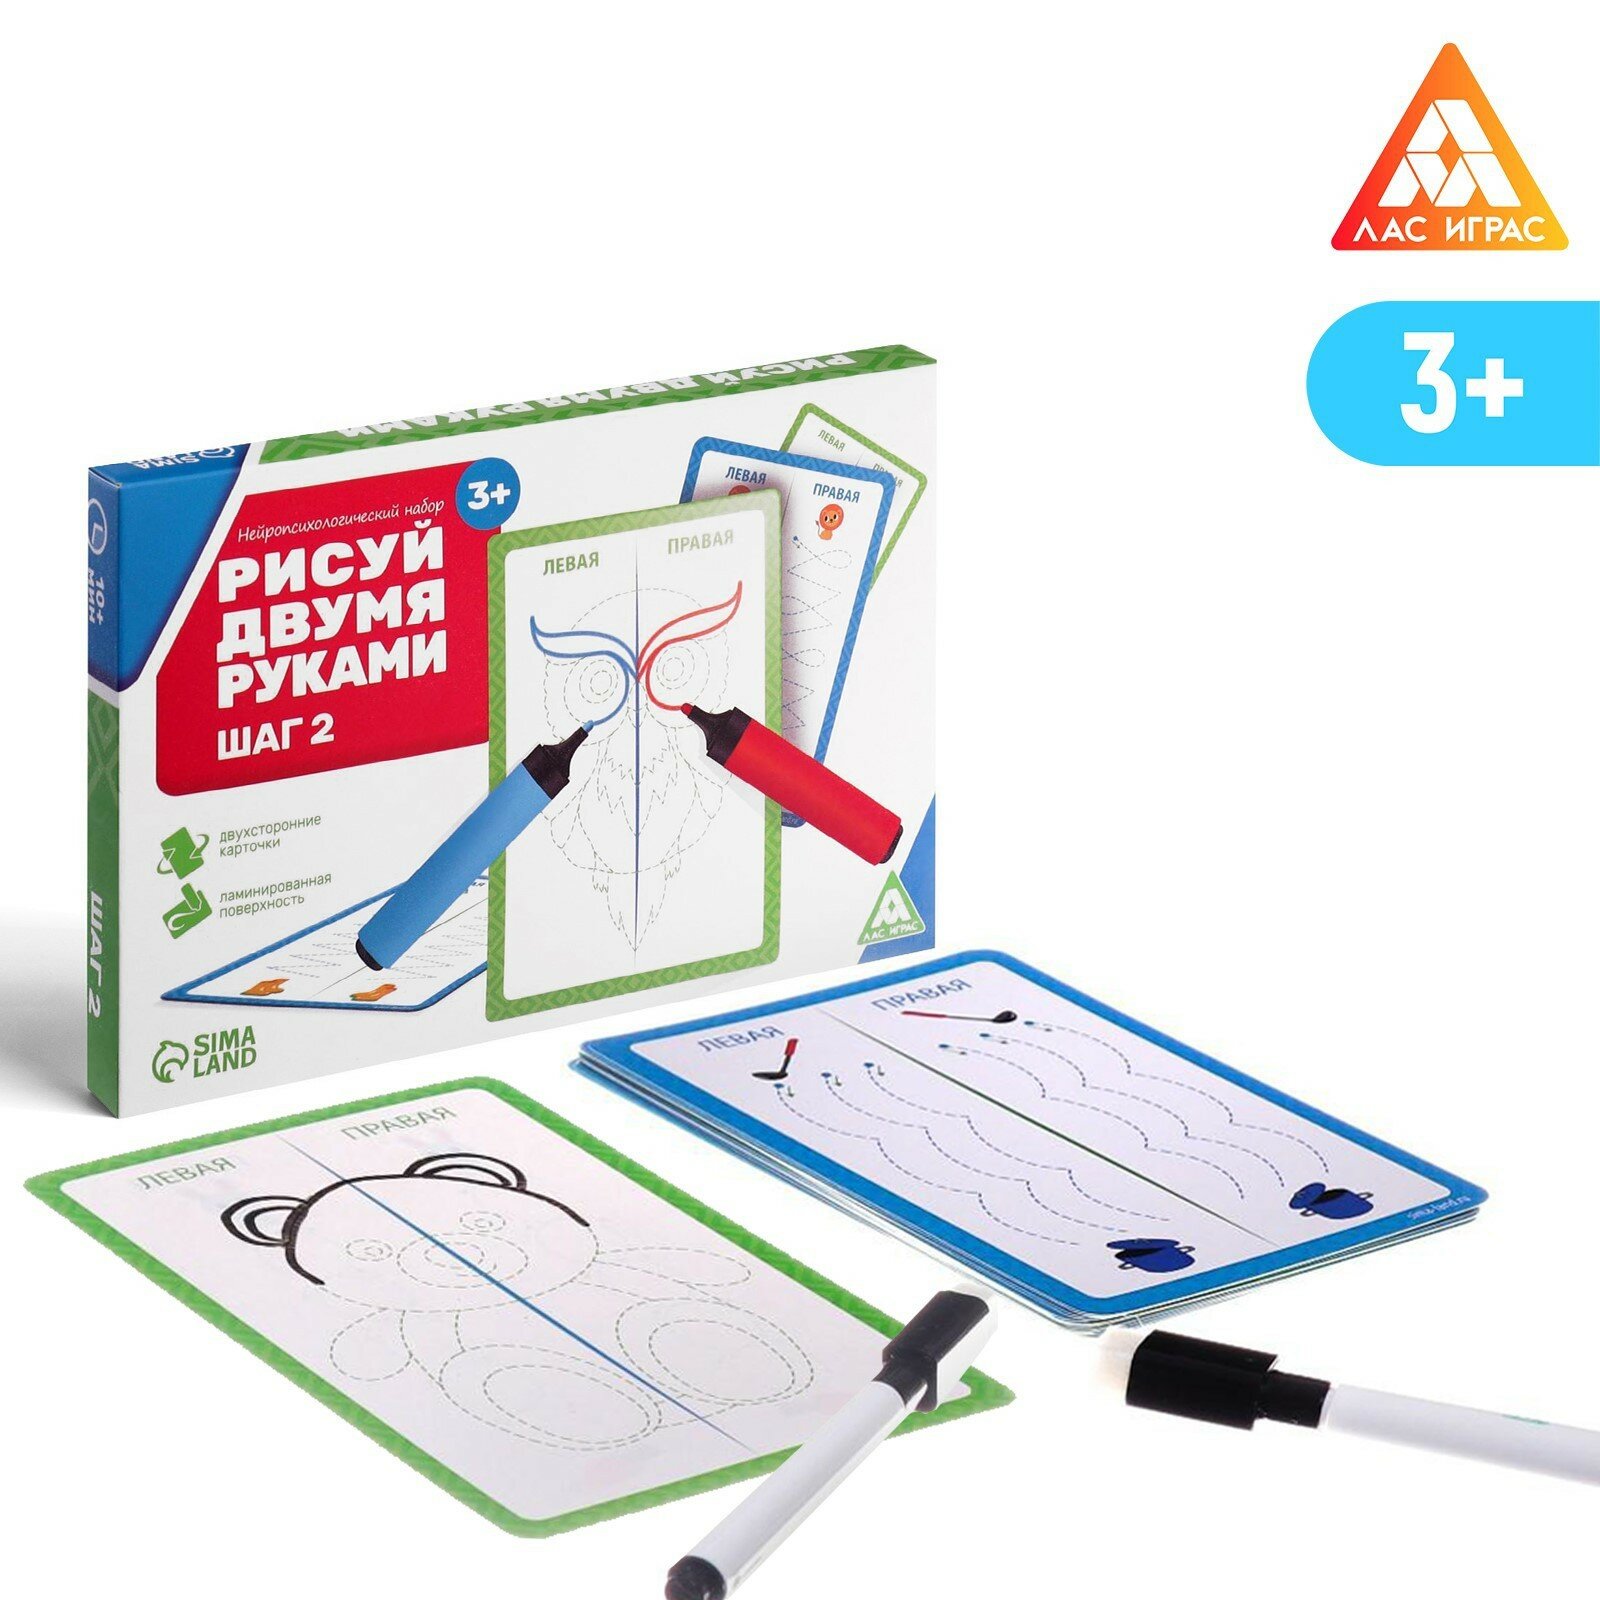 Настольная игра "Рисуй двумя руками. Шаг 2 ", нейропсихологический набор пиши-стирай, 20 карт, 2 многоразовых маркера в комплекте, для детей и малышей